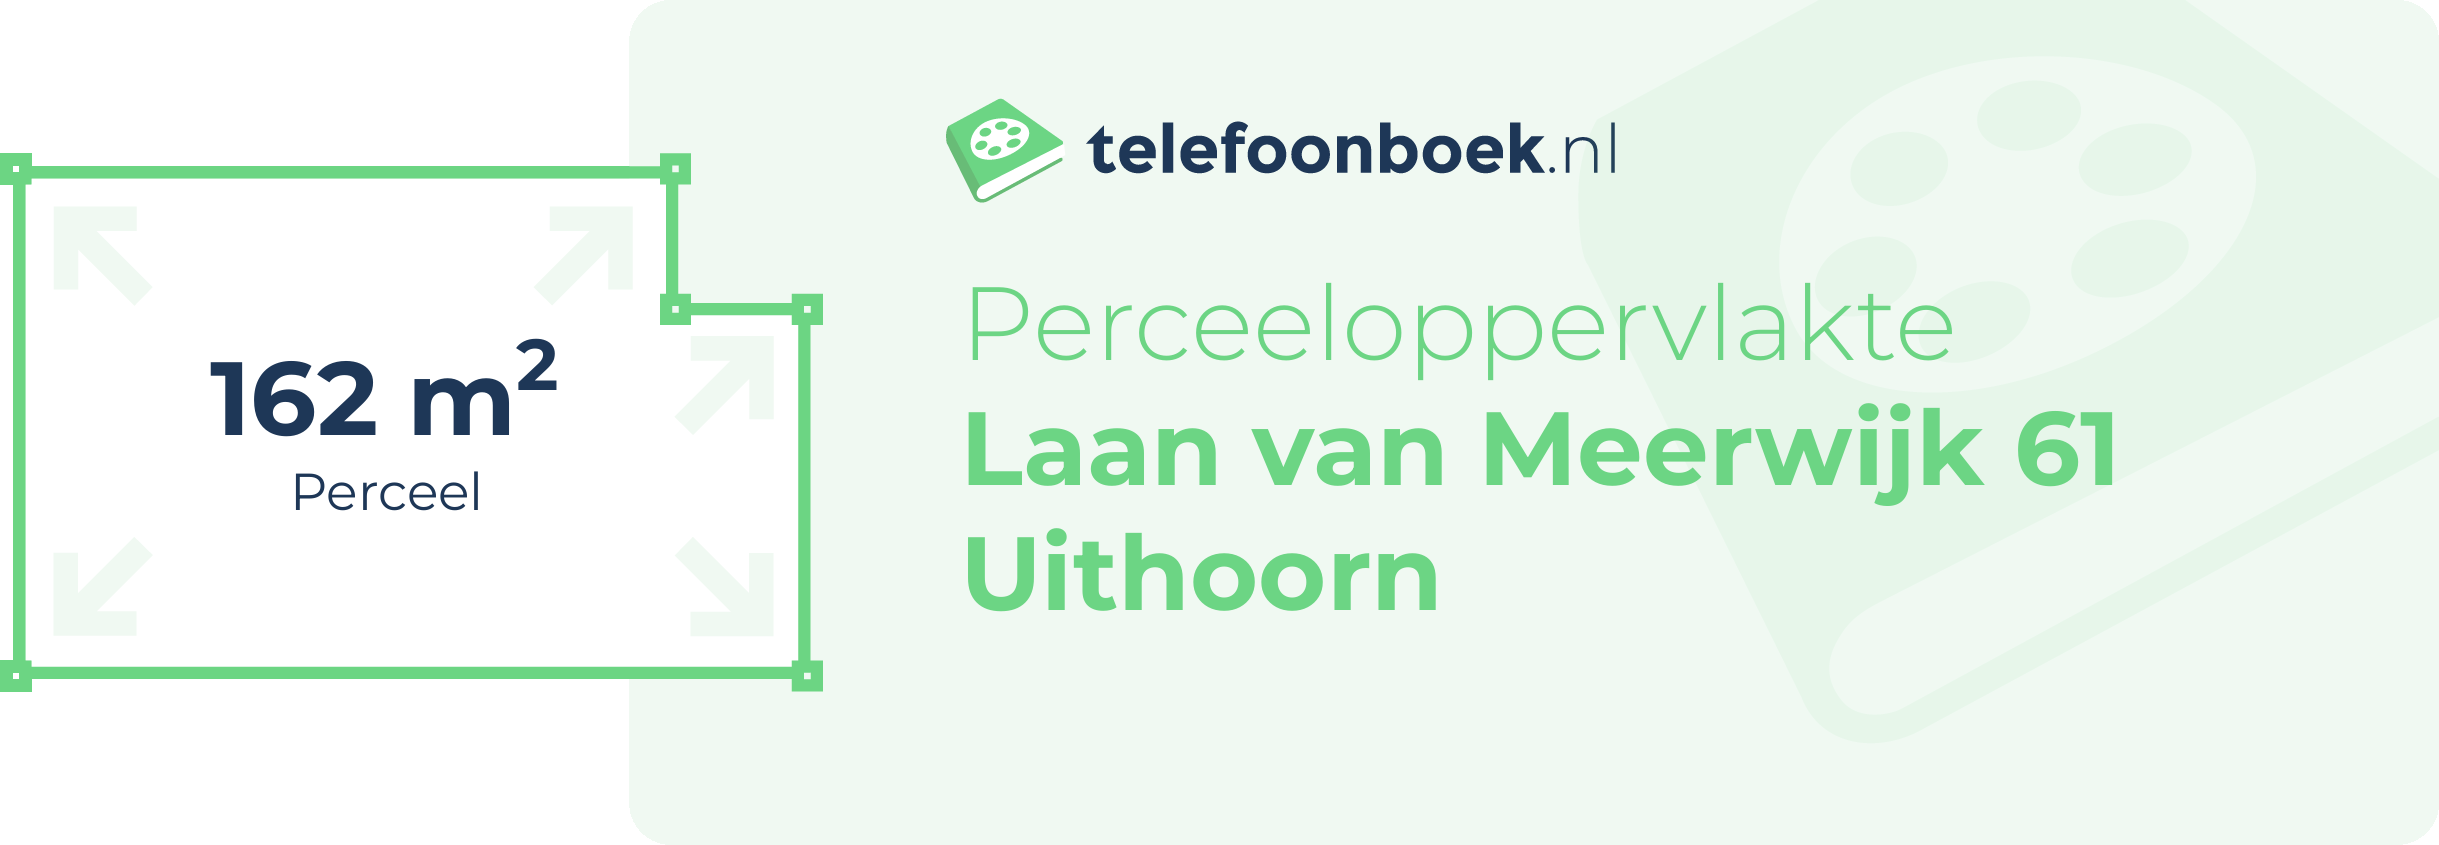 Perceeloppervlakte Laan Van Meerwijk 61 Uithoorn